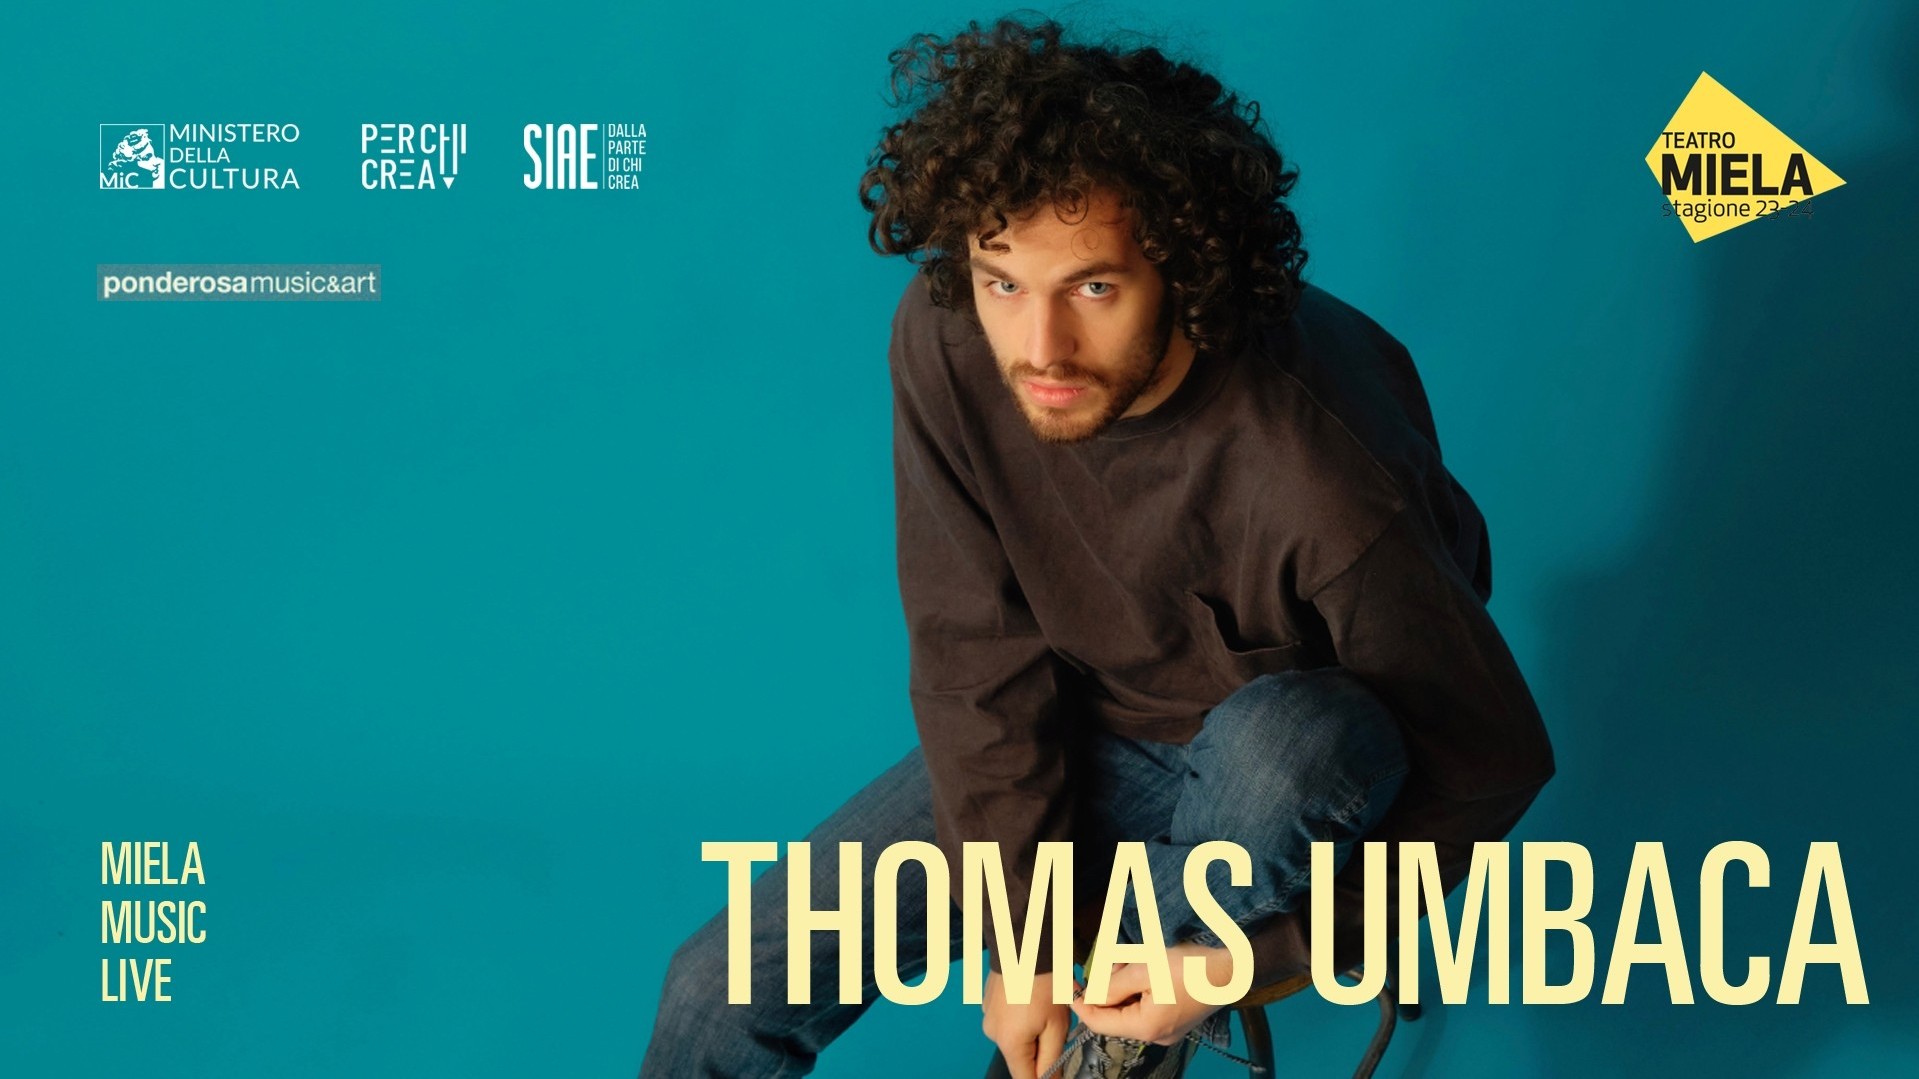 Thomas Umbaca